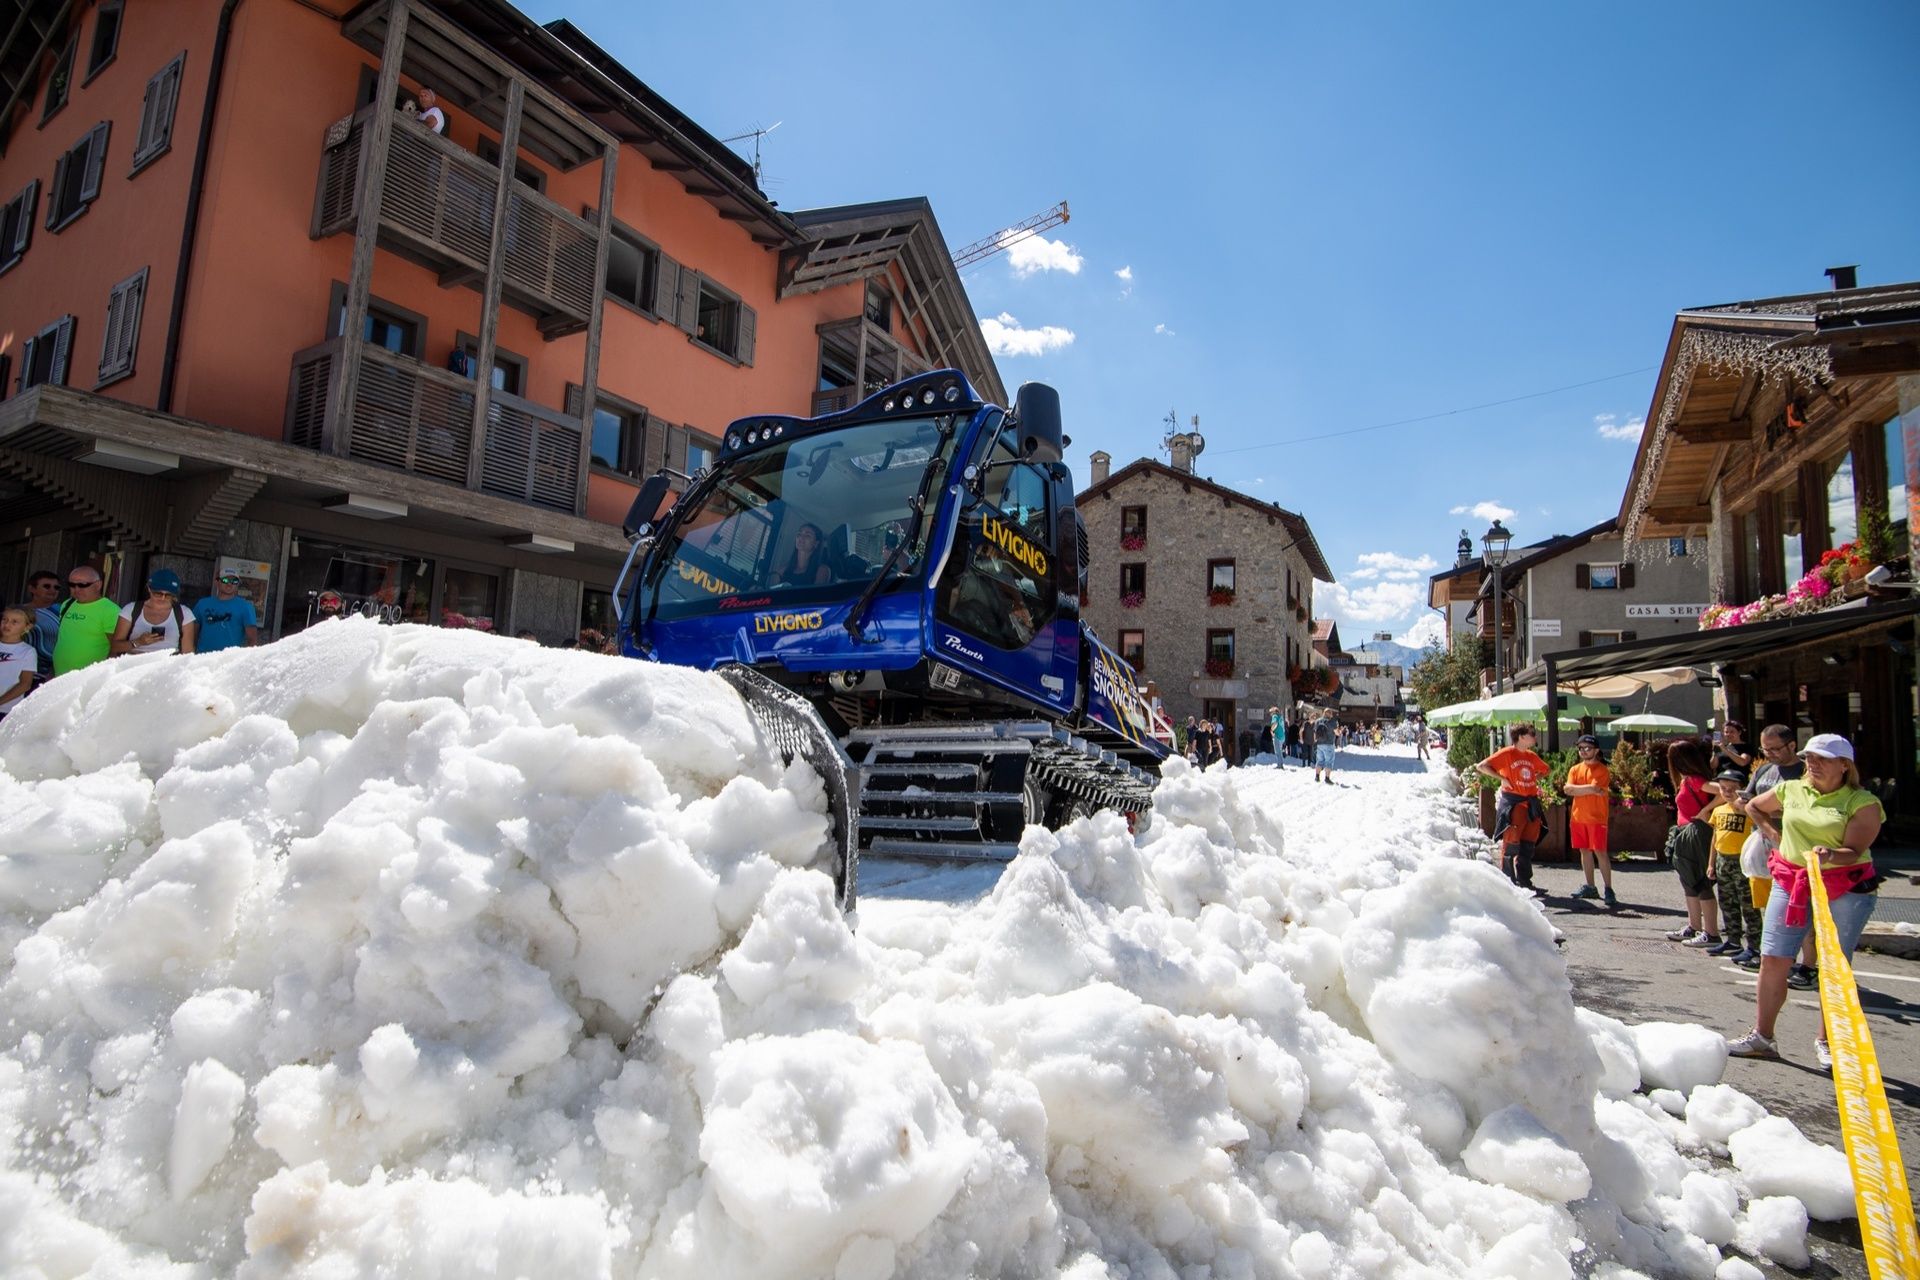 Nieve por las calles de Livigno en agosto